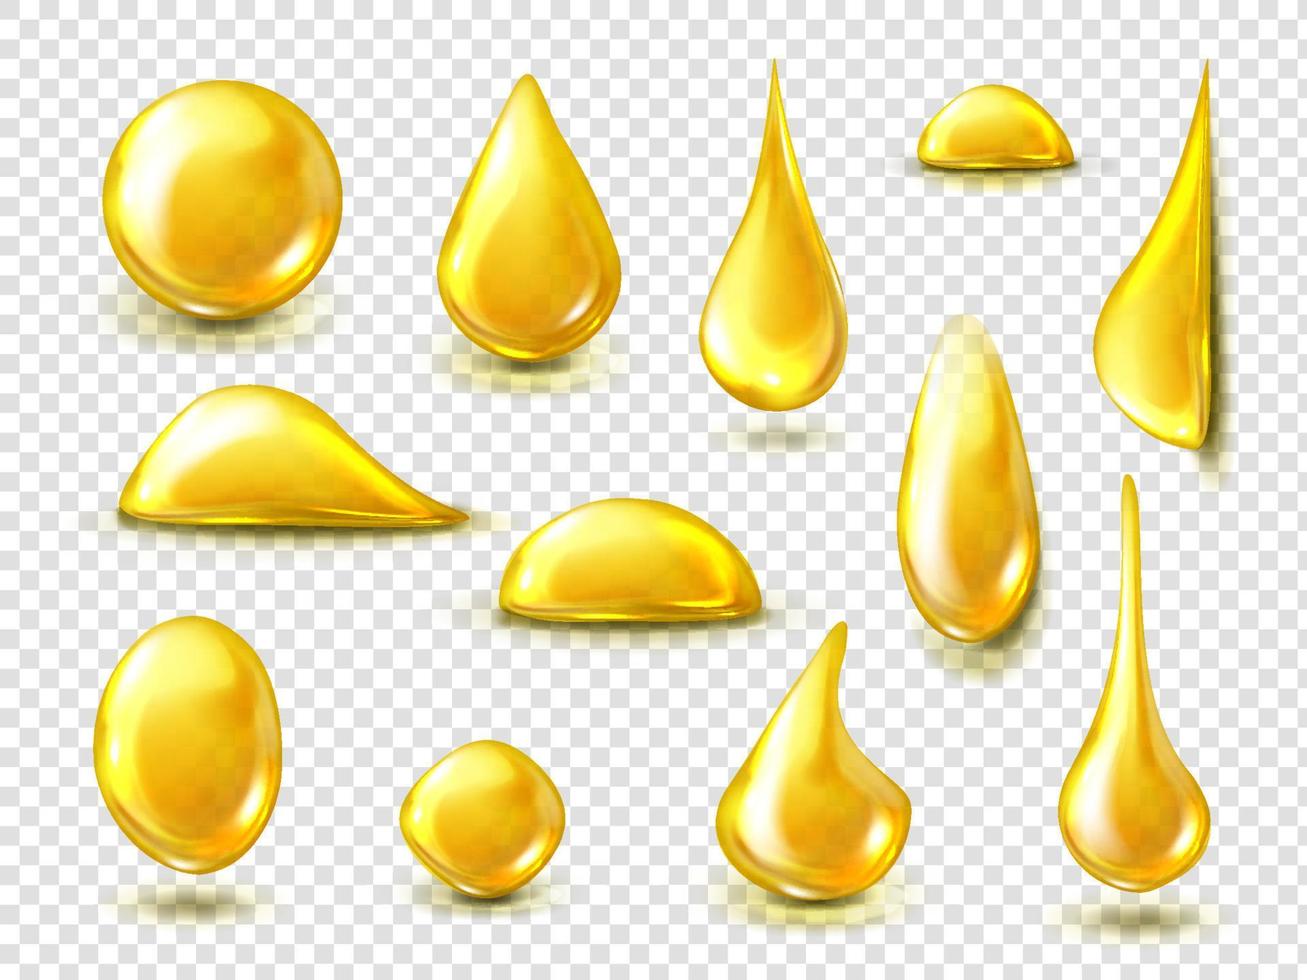 conjunto realista de gotas douradas de óleo ou mel vetor